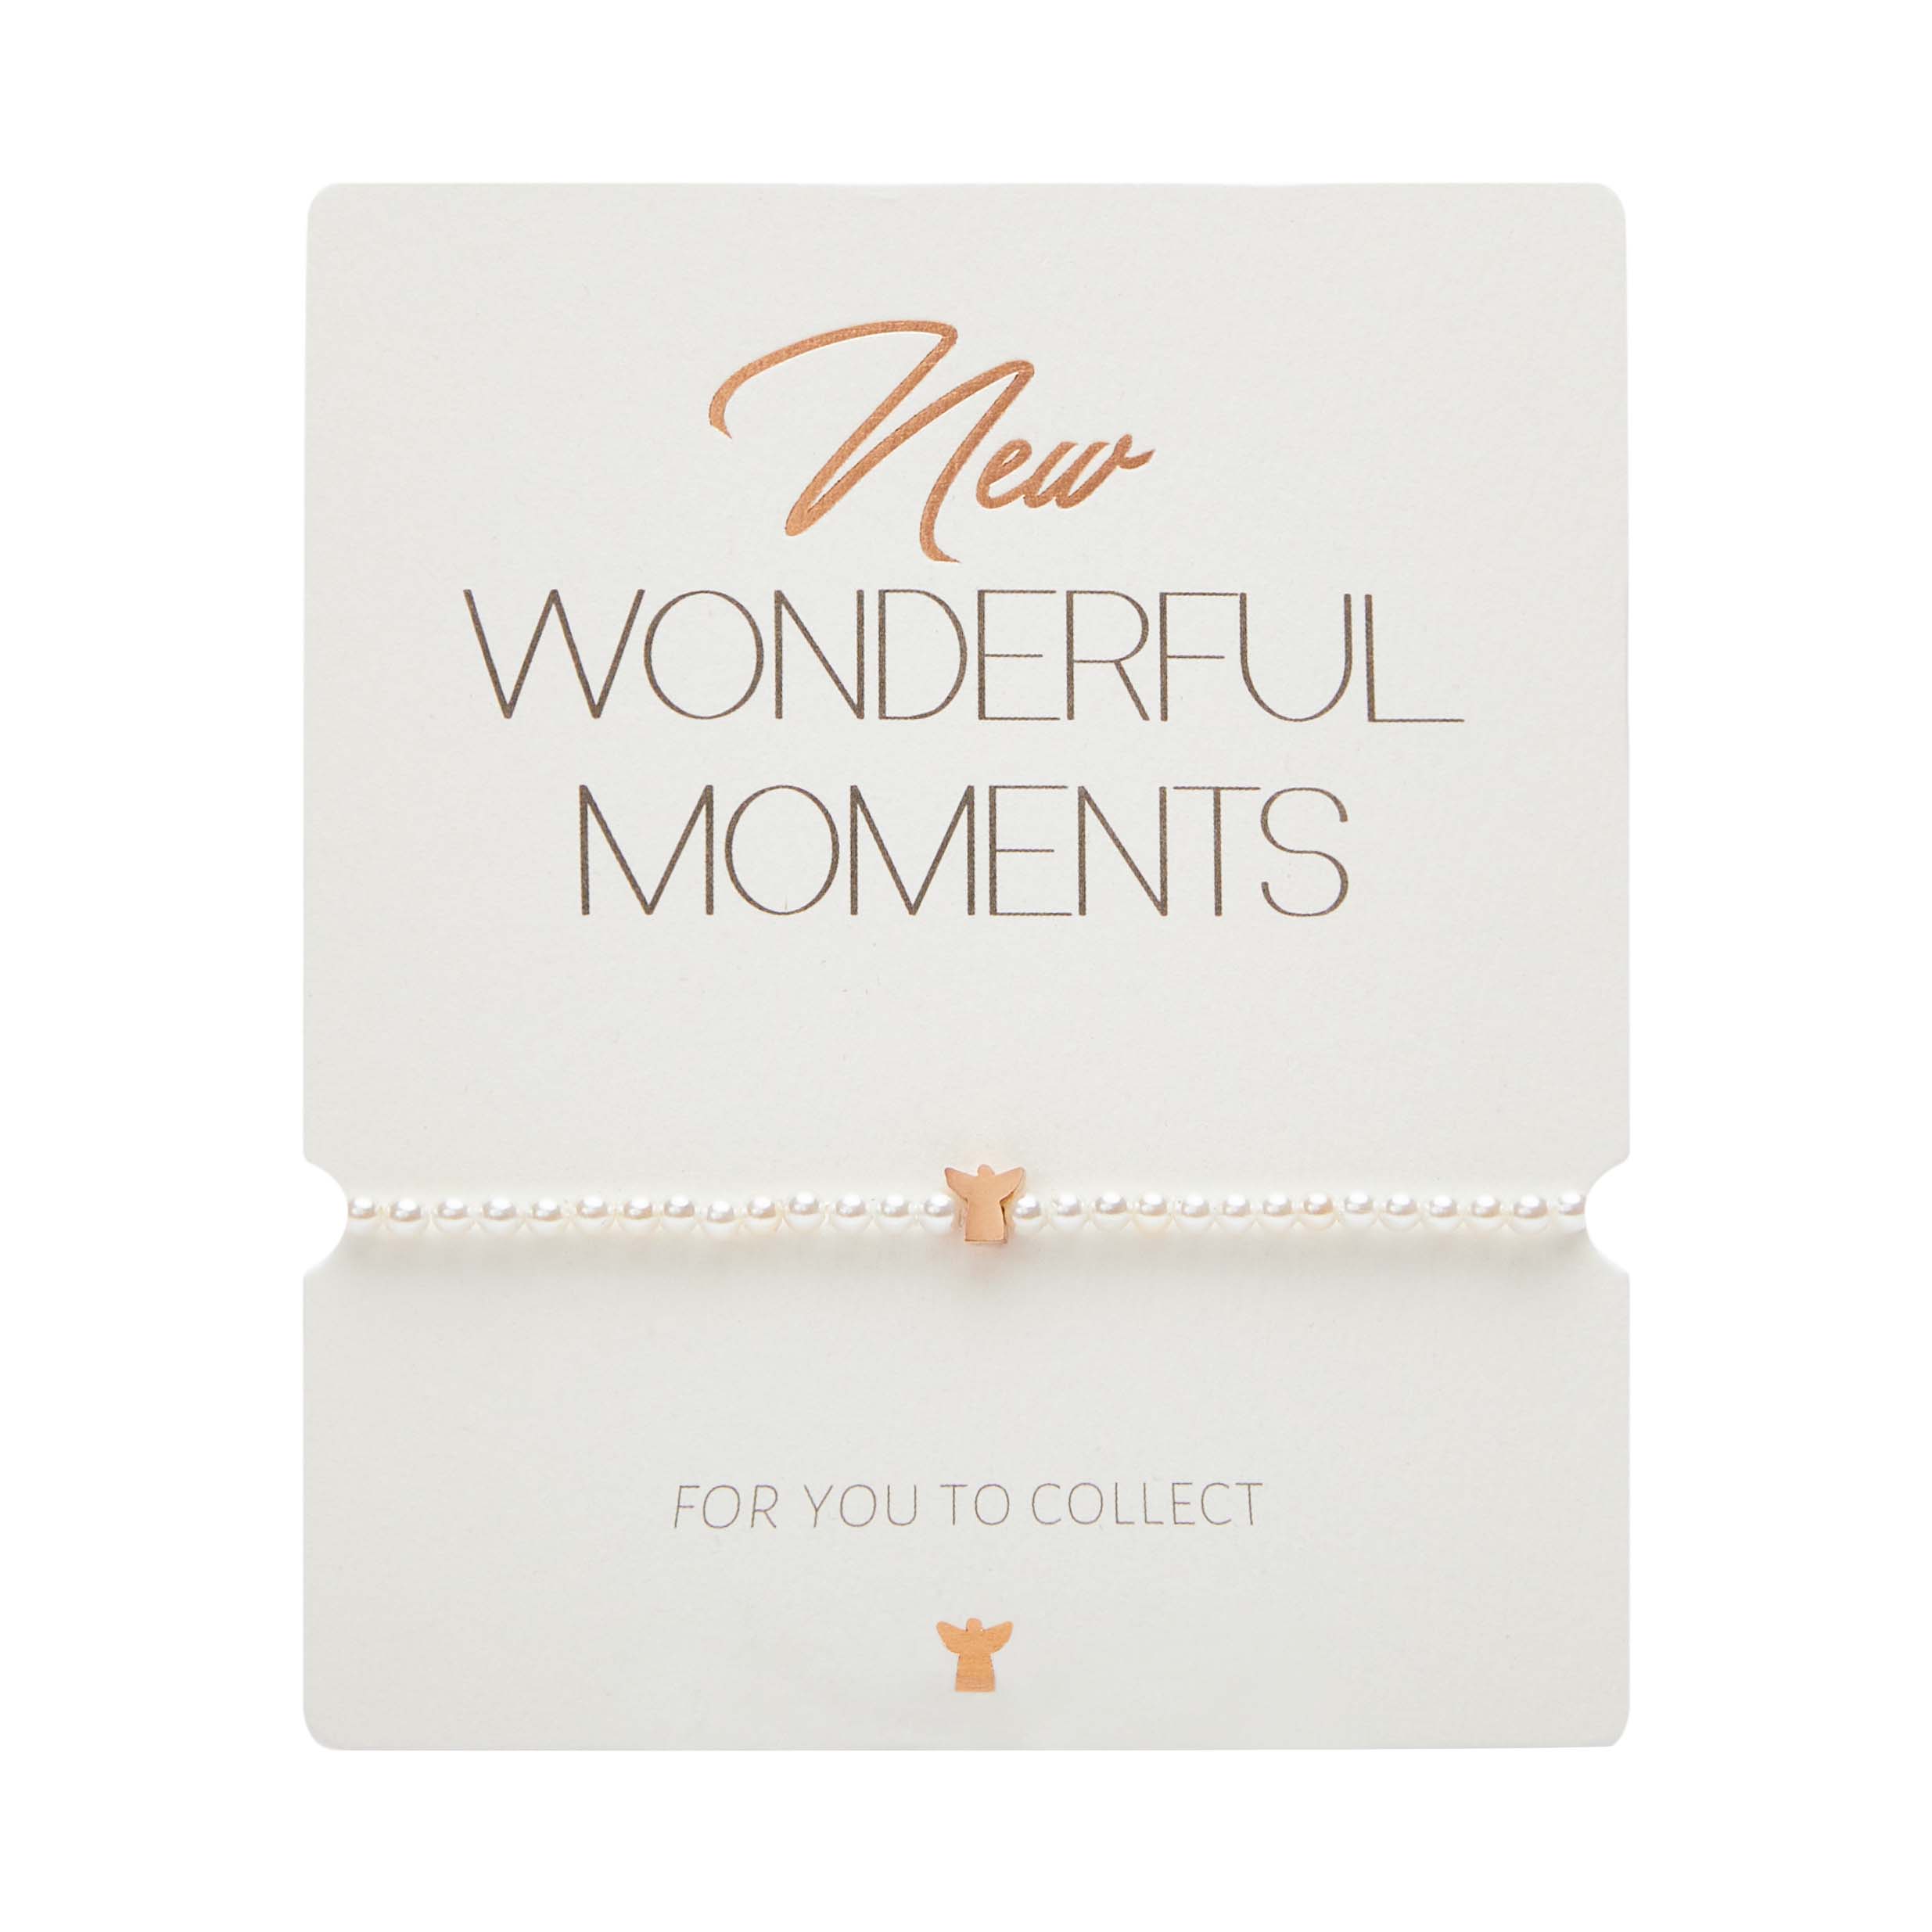 Armband - "New Wonderful Moments" - rosévergoldet - Schutzengel